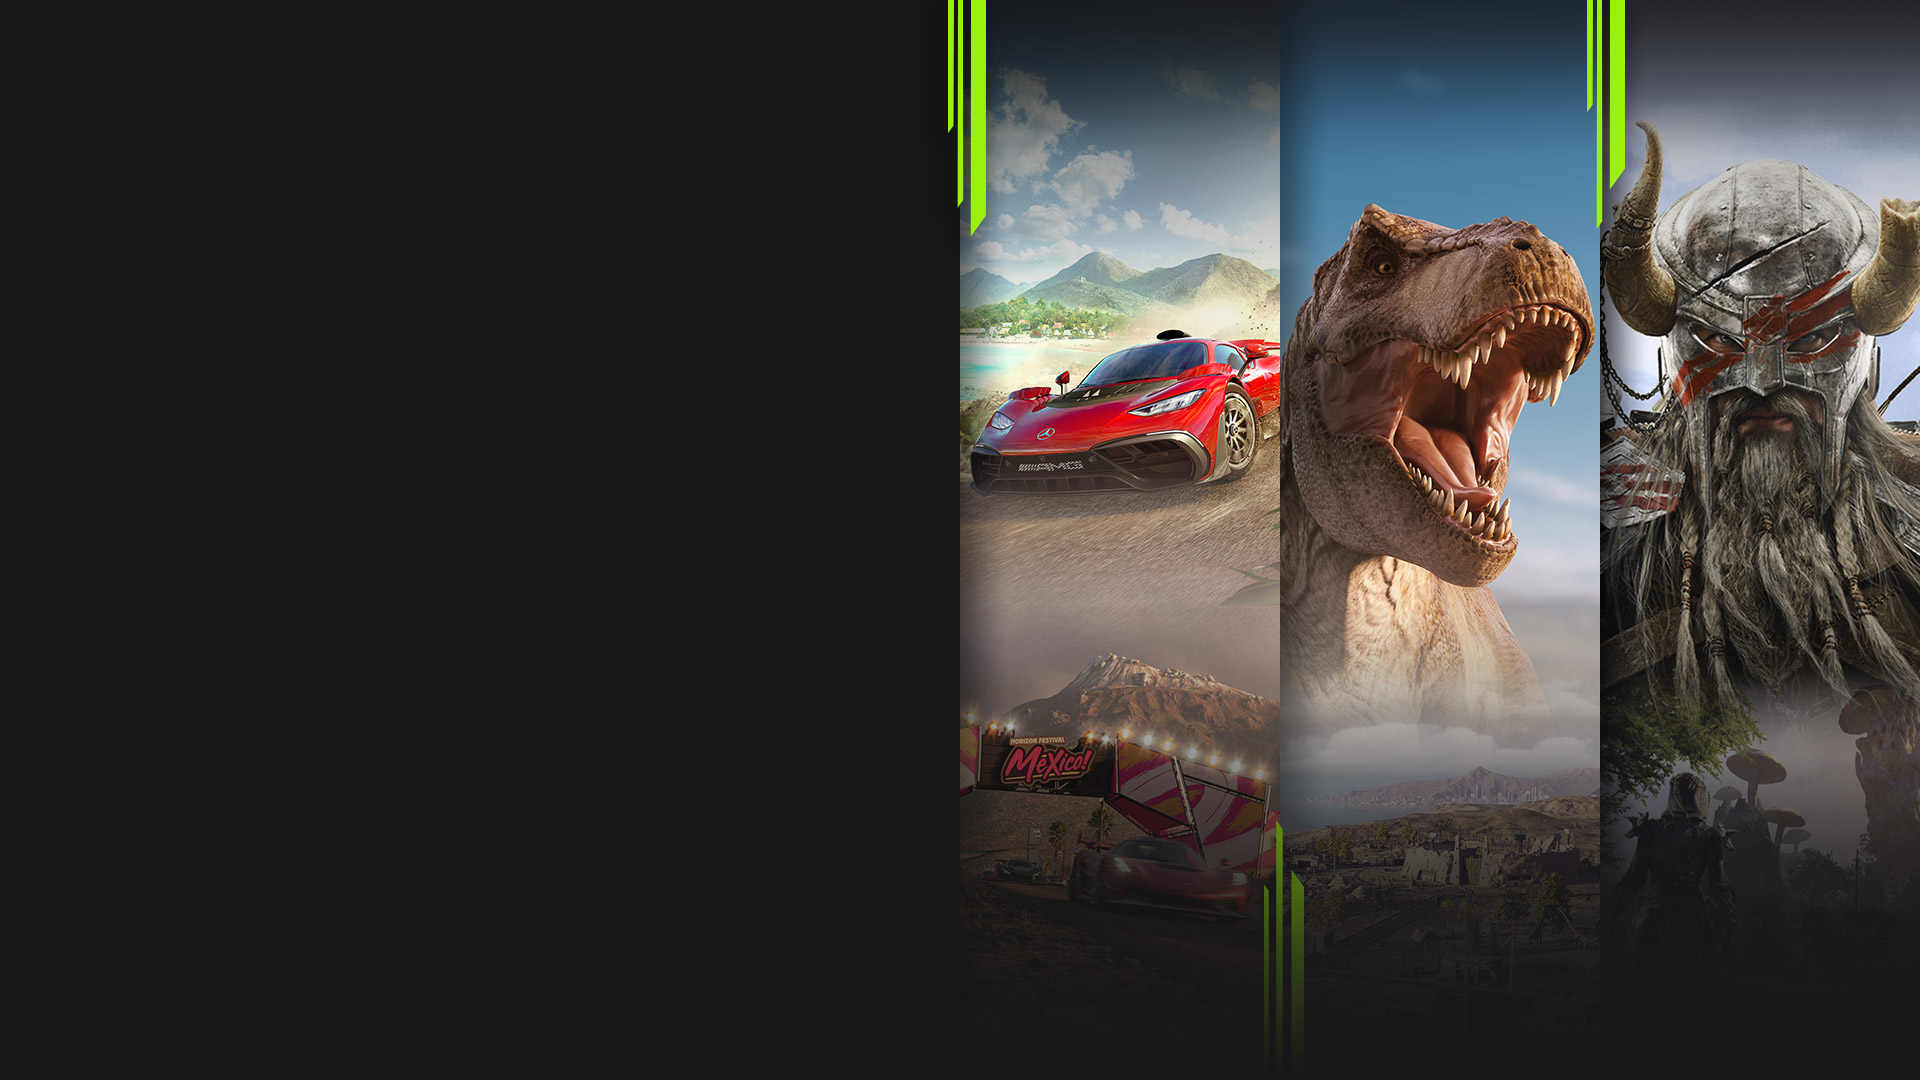 Arte de vários jogos disponíveis agora com o Xbox Game Pass, incluindo Forza Horizon 5, Jurassic World Evolution 2, The Elder Scrolls Online e Halo Infinite.